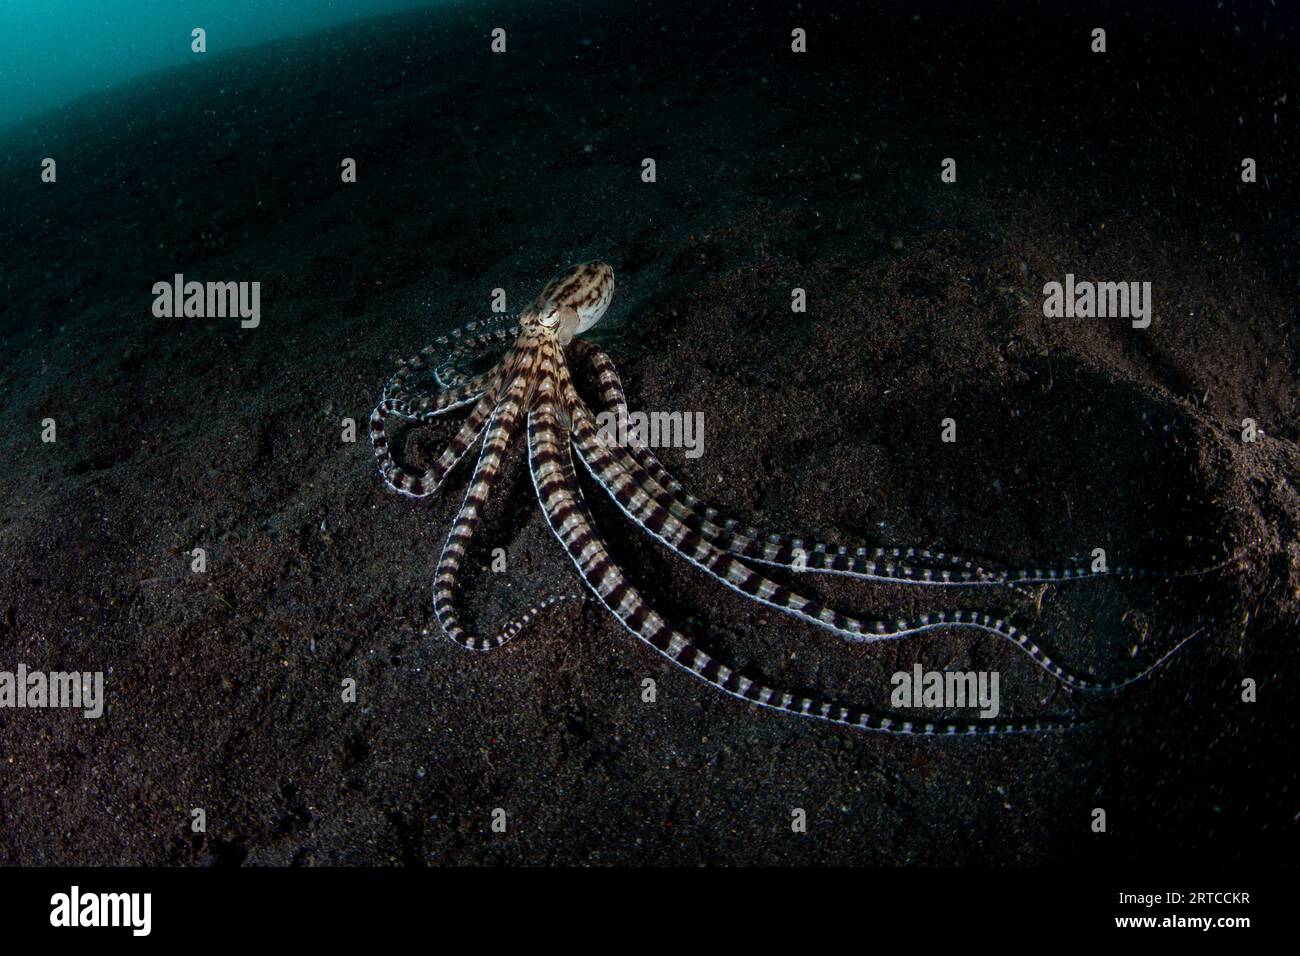 Ein nachgeahmter Oktopus, Thaumoctopus mimicus, kriecht durch einen schwarzen Sandboden in der Lembeh-Straße, Indonesien. Dieses einzigartige Kopffüßer kann andere Arten imitieren. Stockfoto